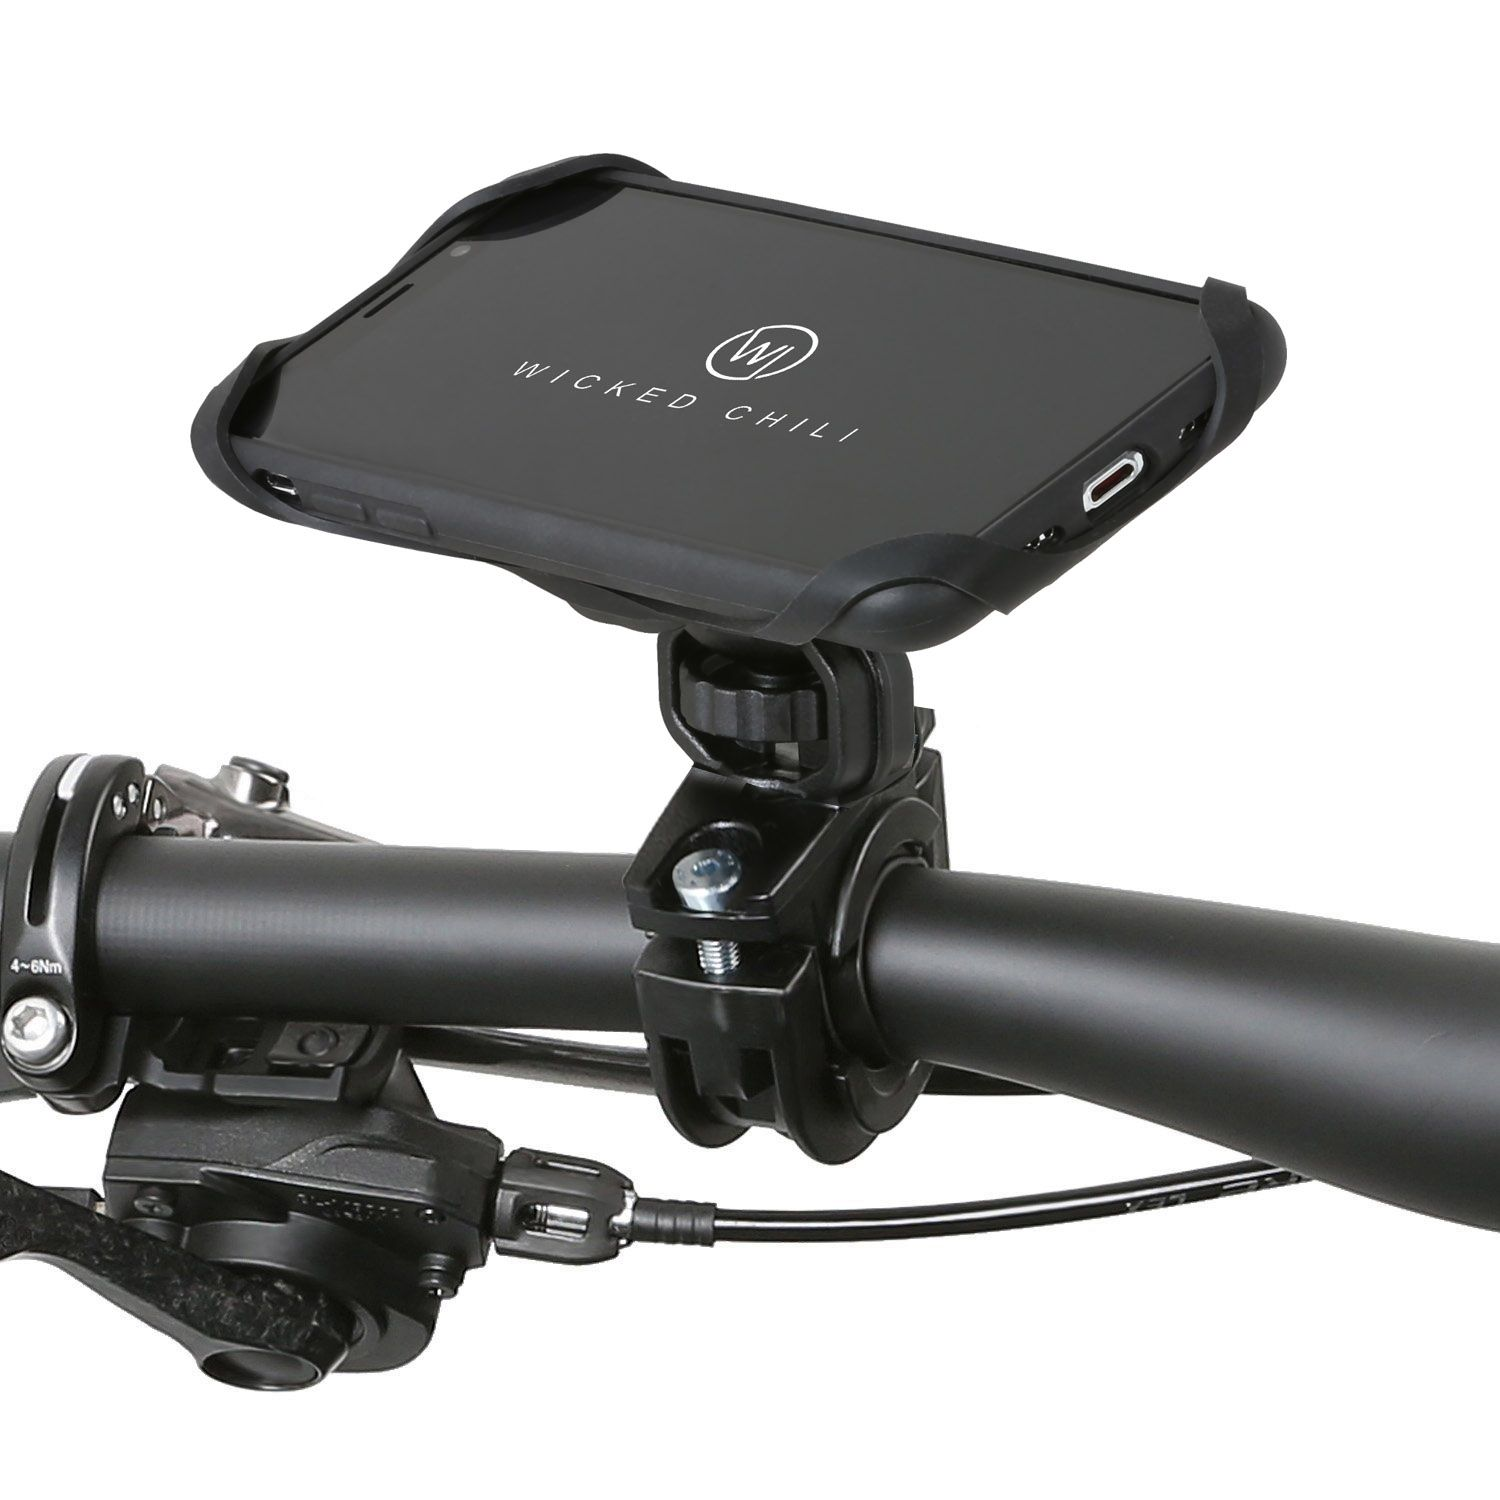 Galaxy CHILI Samsung WICKED Motorrad QuickMOUNT Halterung S9 schwarz für Motorradhalterung, Fahrrad / Fahrradhalterung